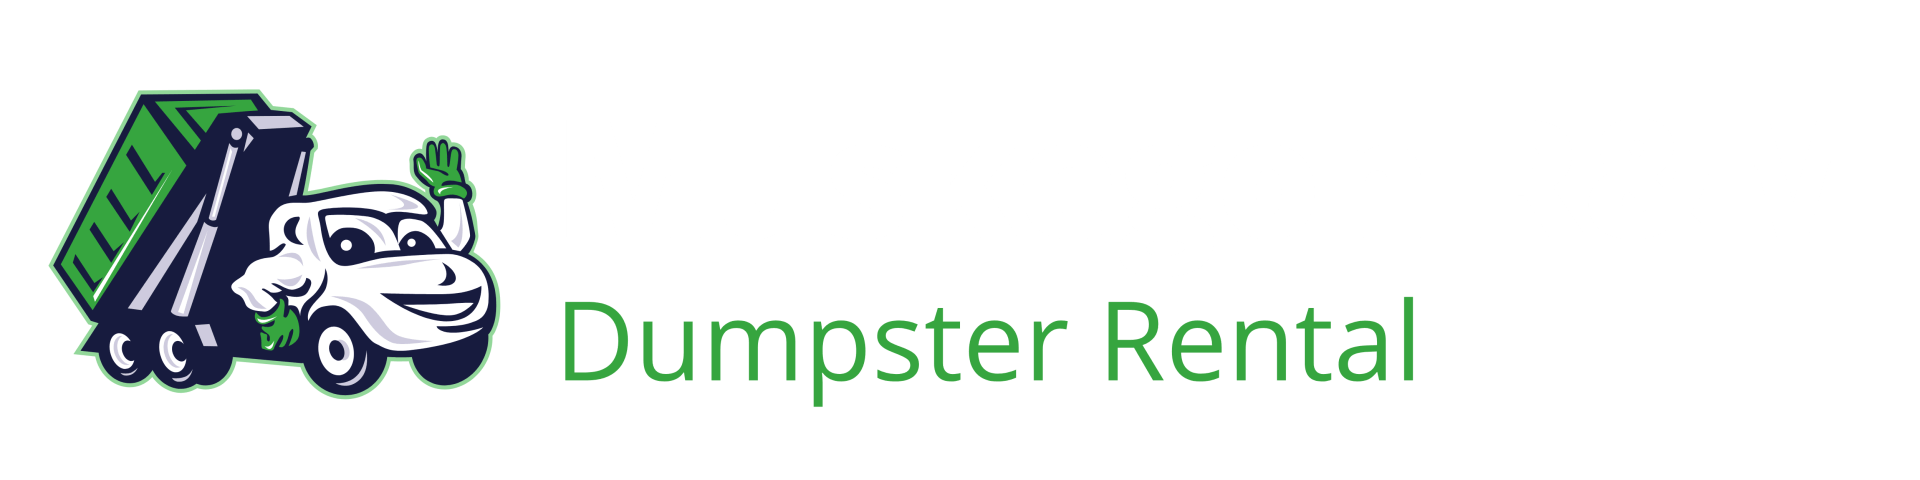 Muskegon R&M Dumpster Rental Logo